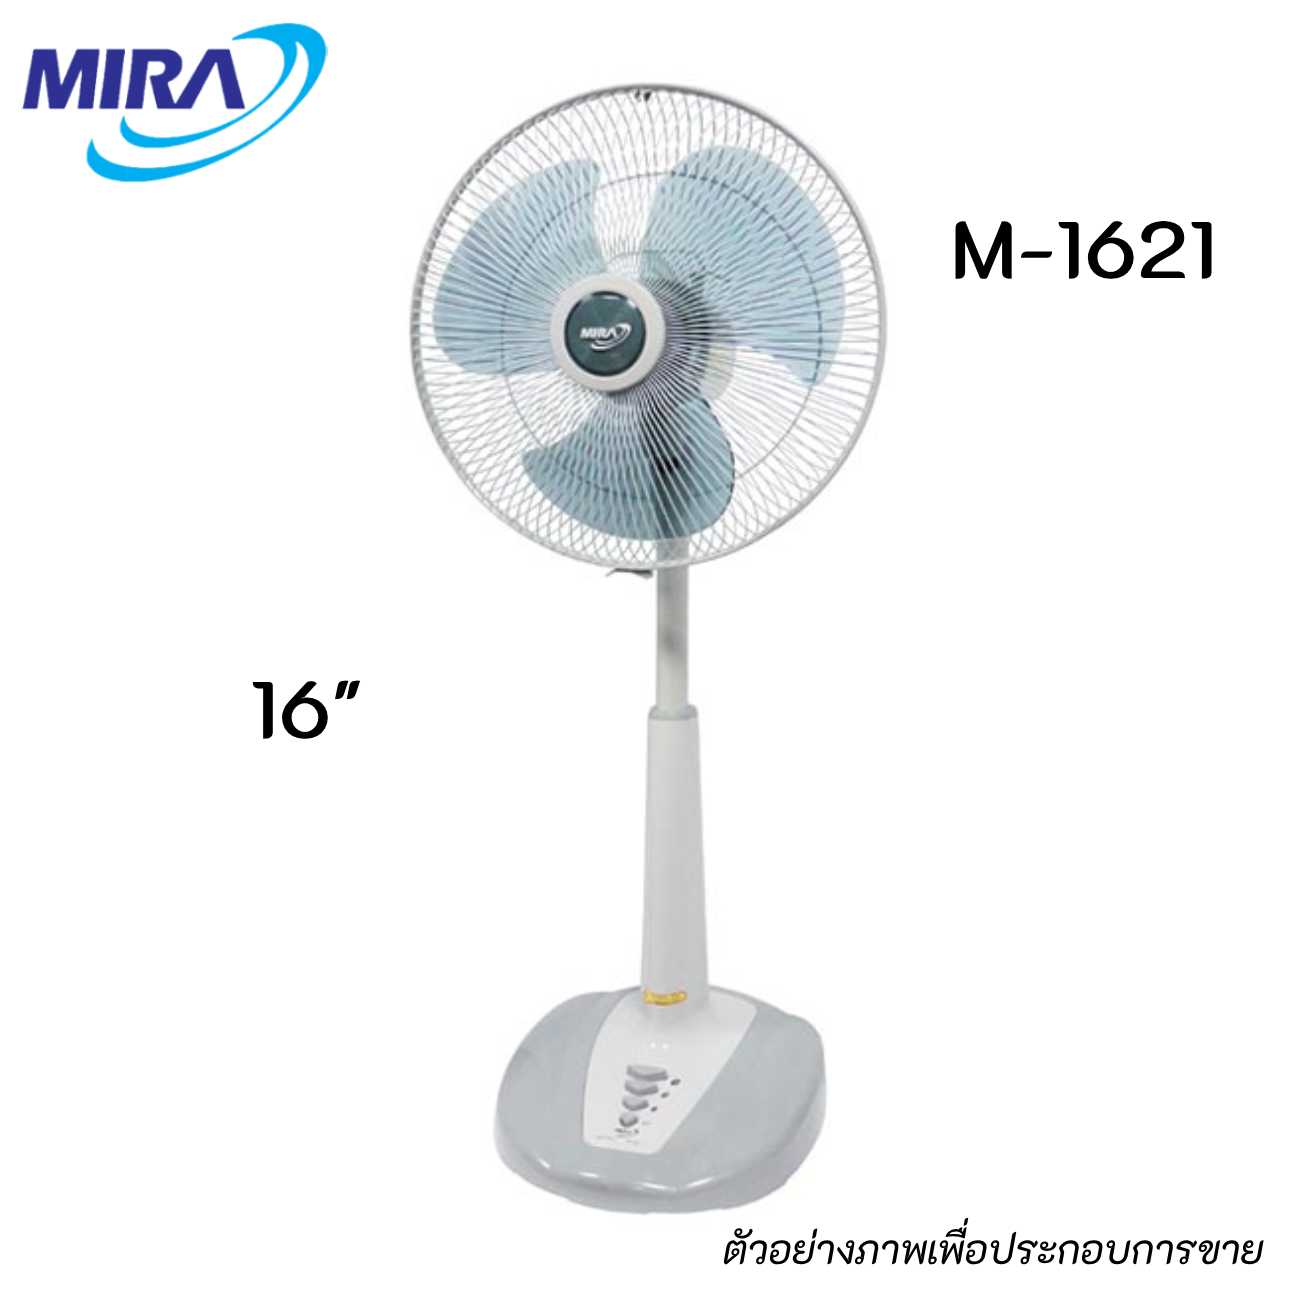 MIRA M-1621 พัดลมปรับระดับขนาด 16 นิ้ว สีเทา